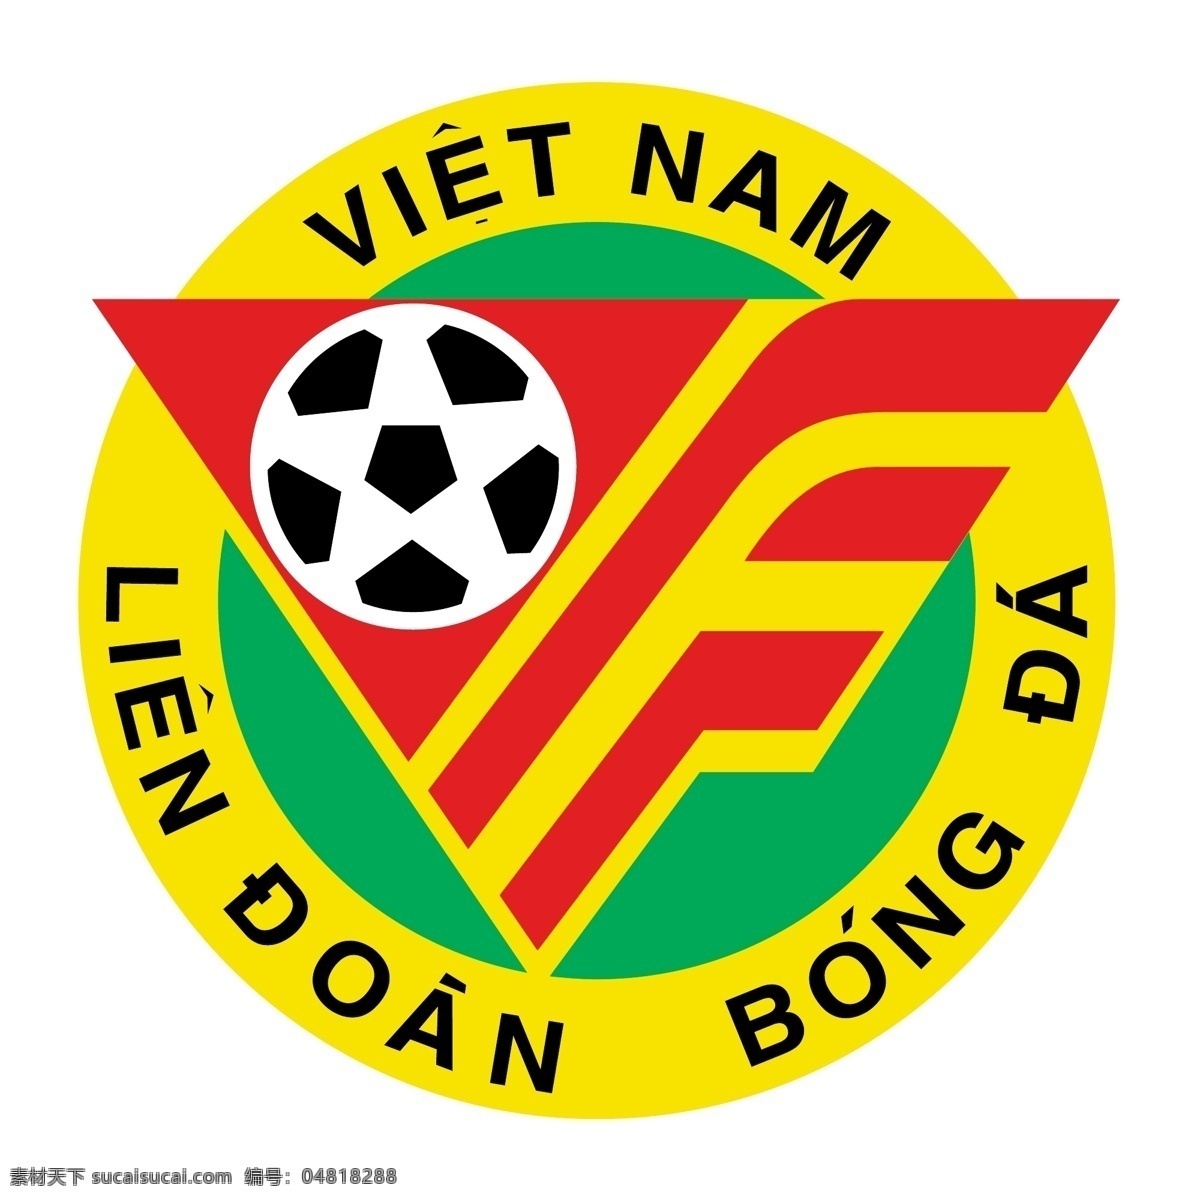 越南 足球 联赛 自由 标识 psd源文件 logo设计